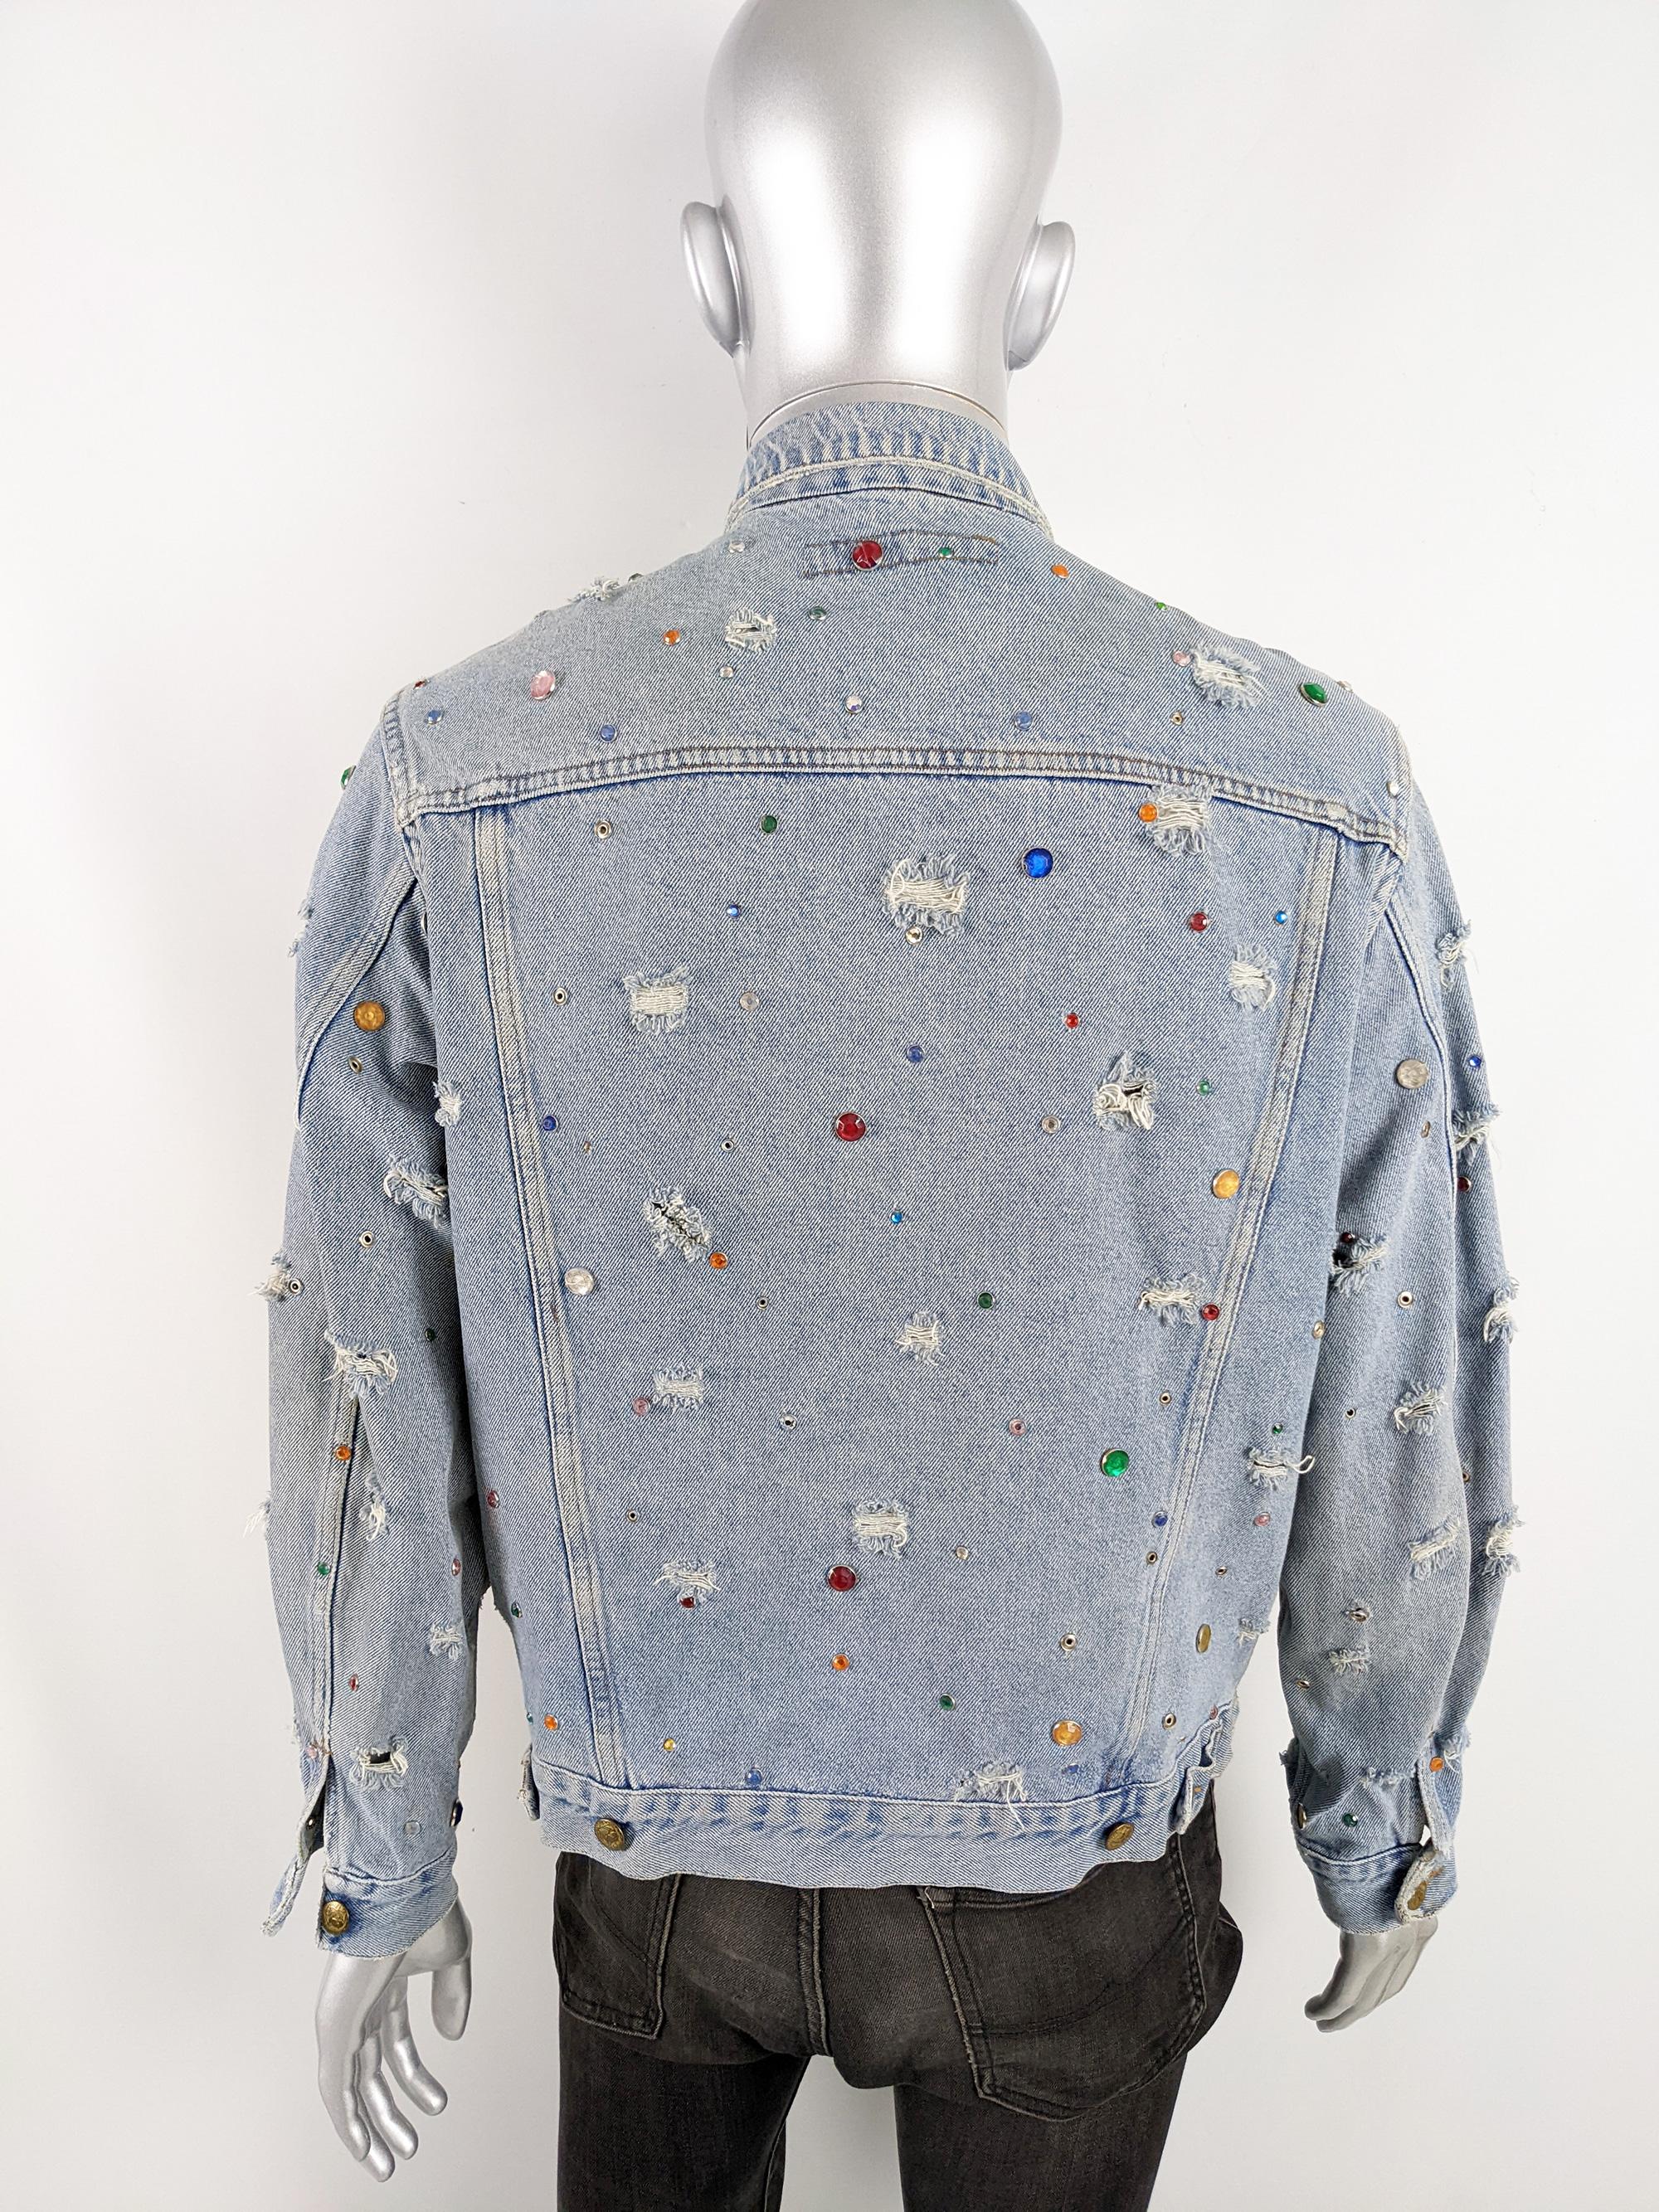 Katharine Hamnett Mens Vintage Incredible Studded Distressed Denim Jean Jacket For Sale 3